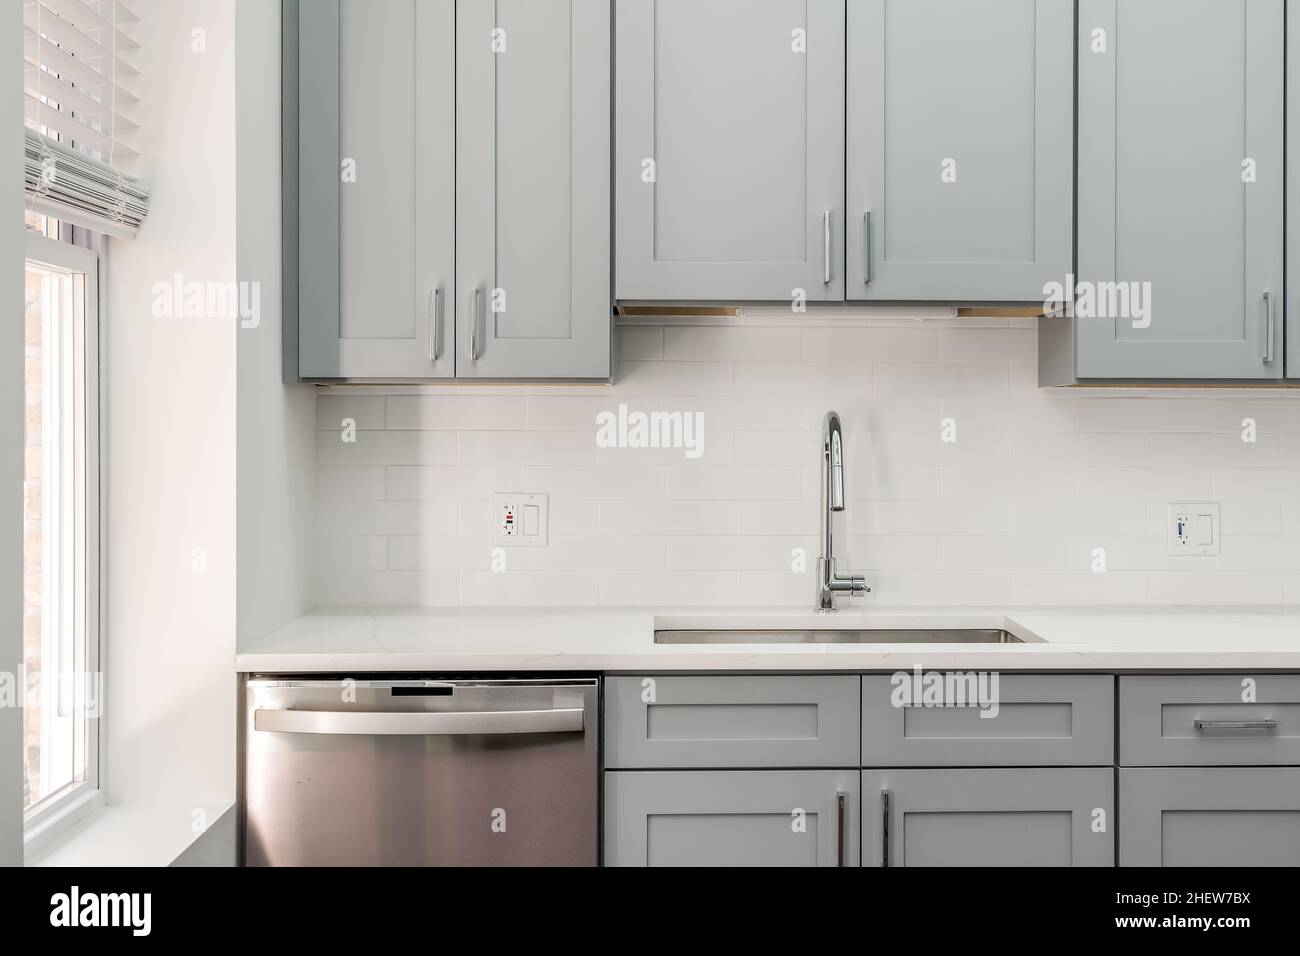 Cucina moderna in stile Condo grigio con armadi in stile Shaker grigio, backsplash Subway Tile e accessori in acciaio inossidabile Foto Stock